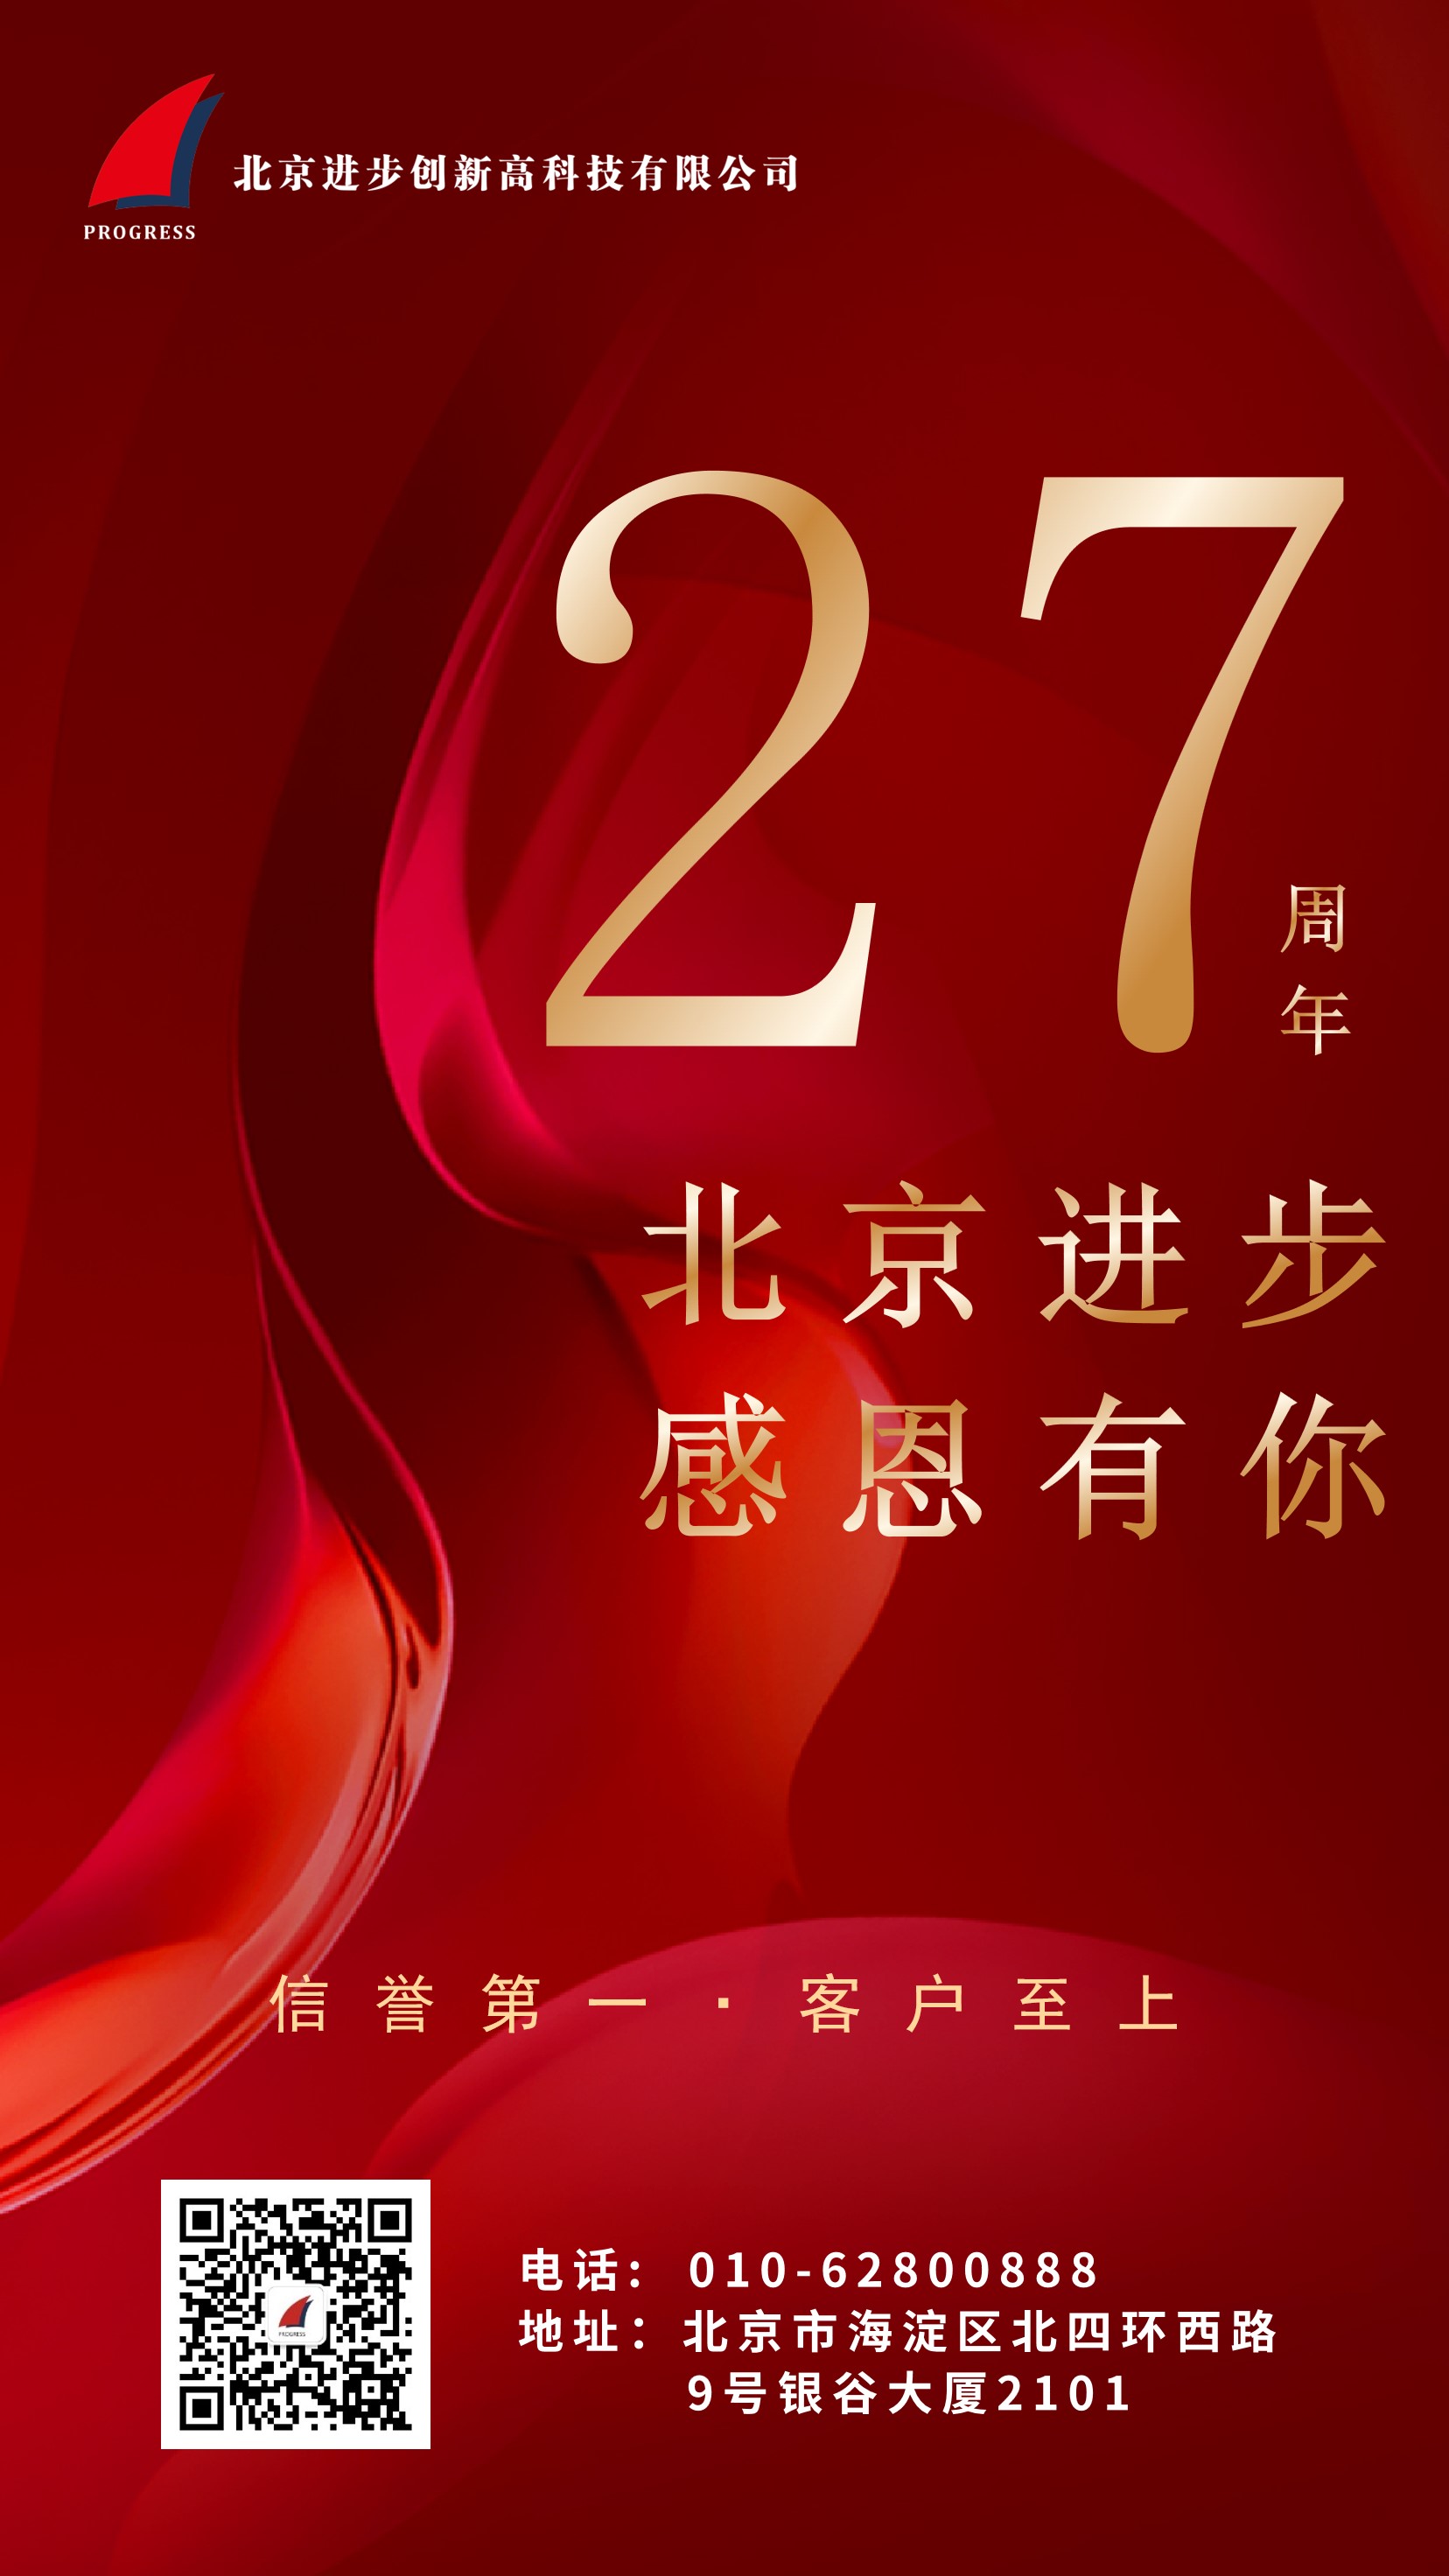 熱烈慶祝北京進步公司成立二十七周年！